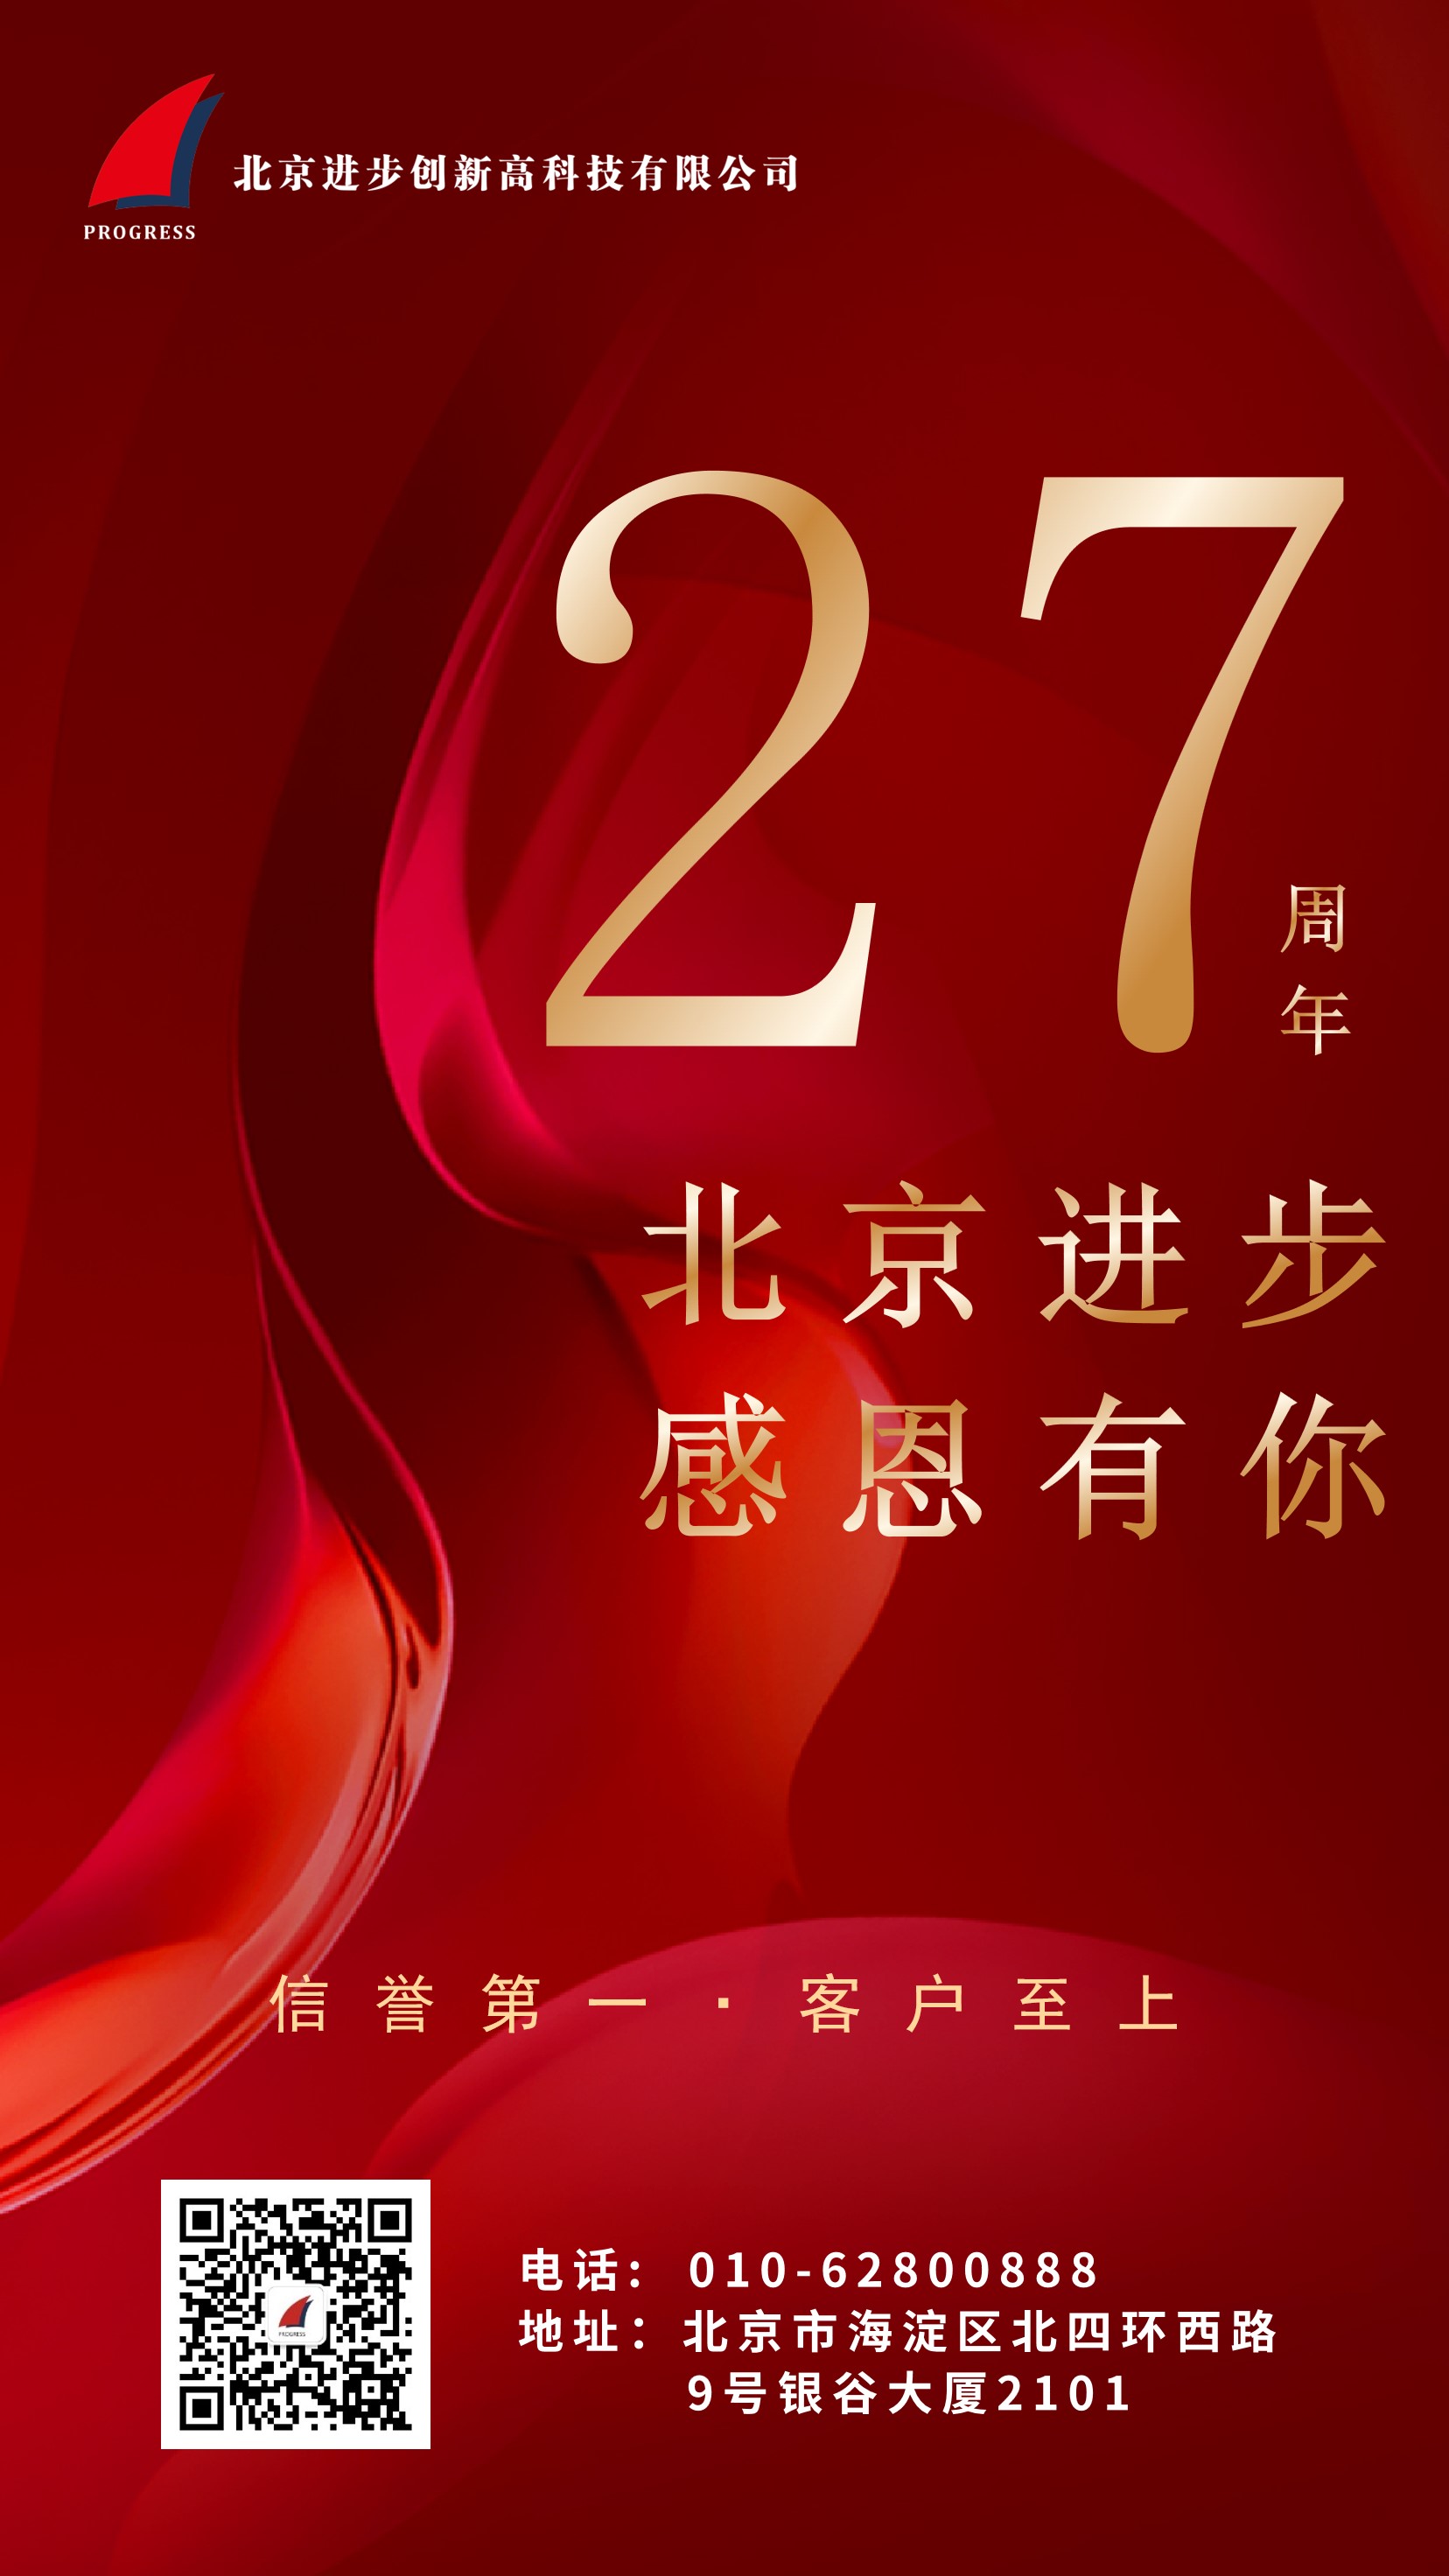 熱烈慶祝北京進步公司成立二十七周年！